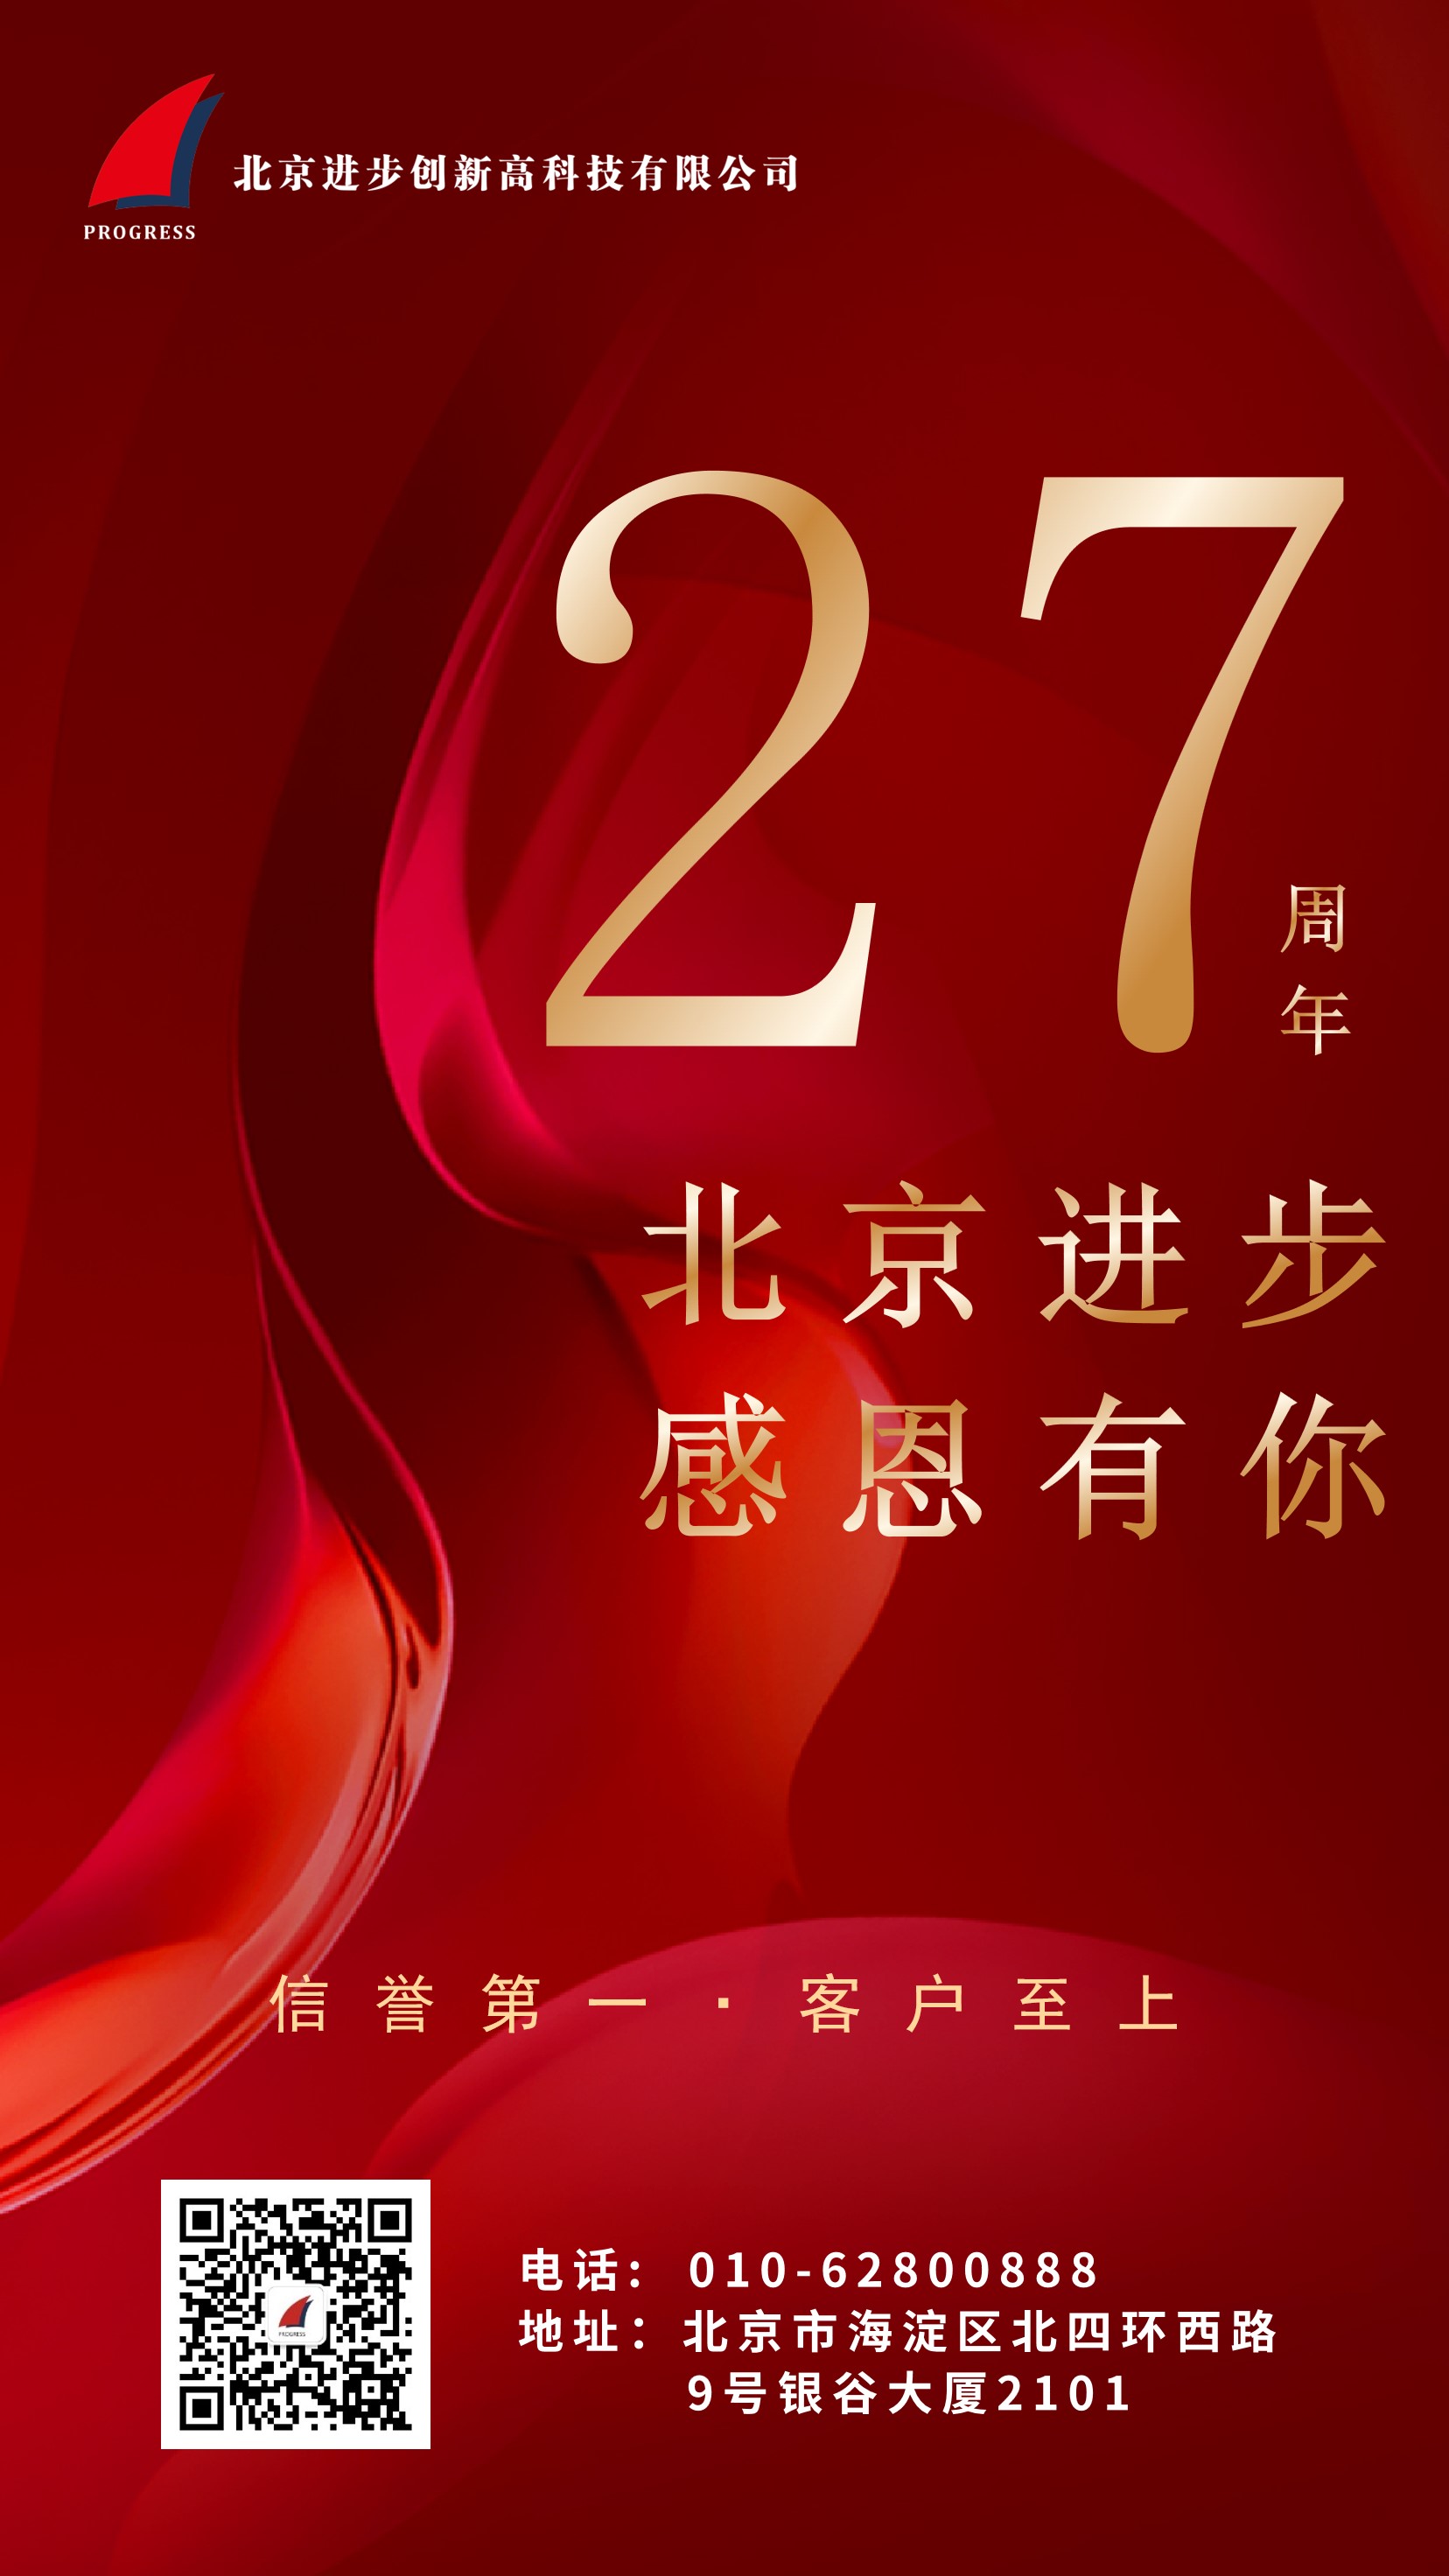 熱烈慶祝北京進步公司成立二十七周年！